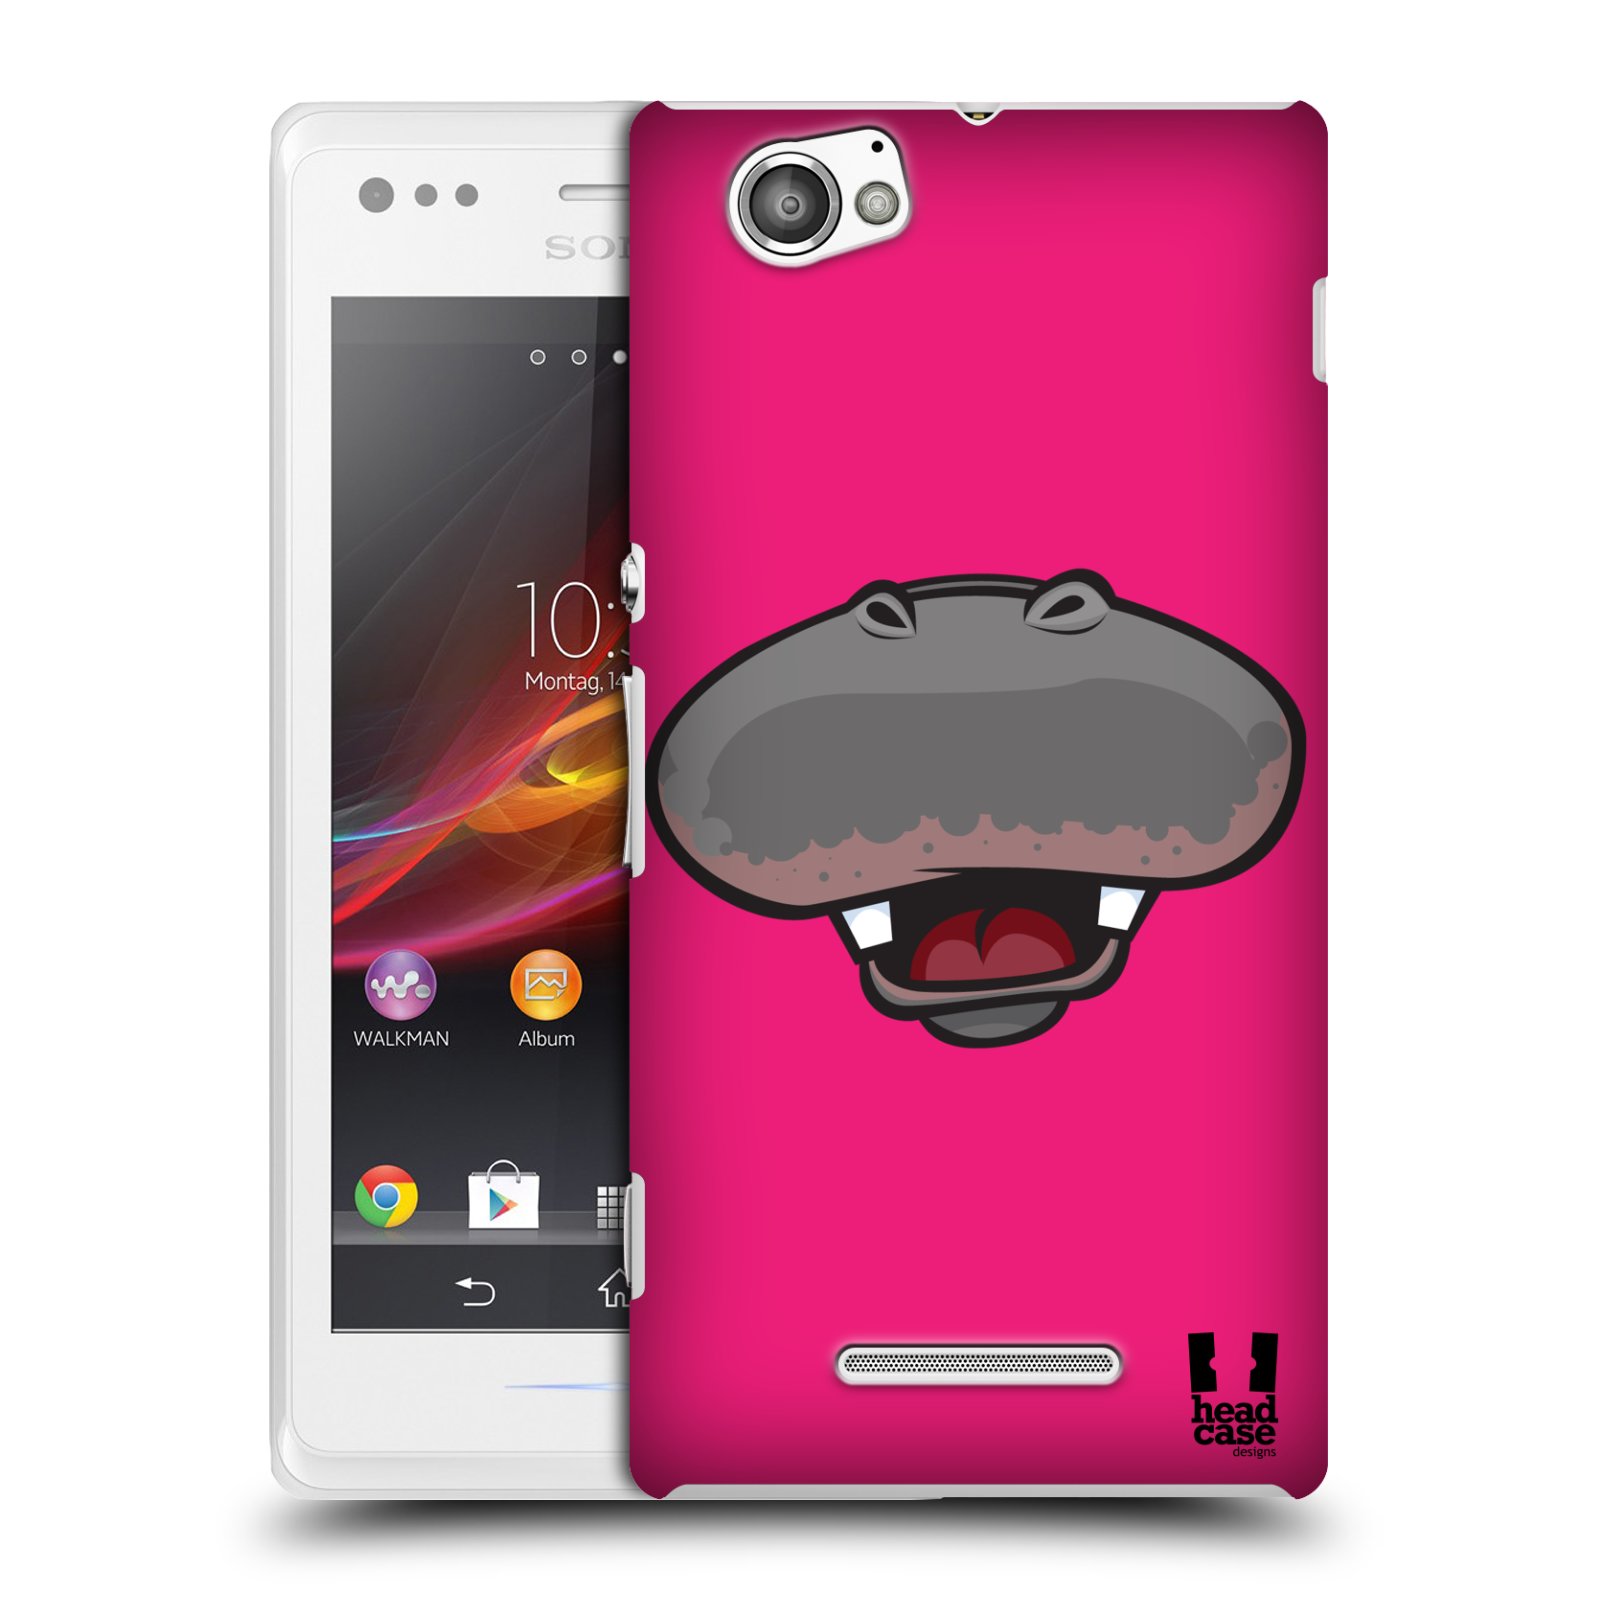 HEAD CASE plastový obal na mobil Sony Xperia M vzor Zvířecí úsměv hroch růžová